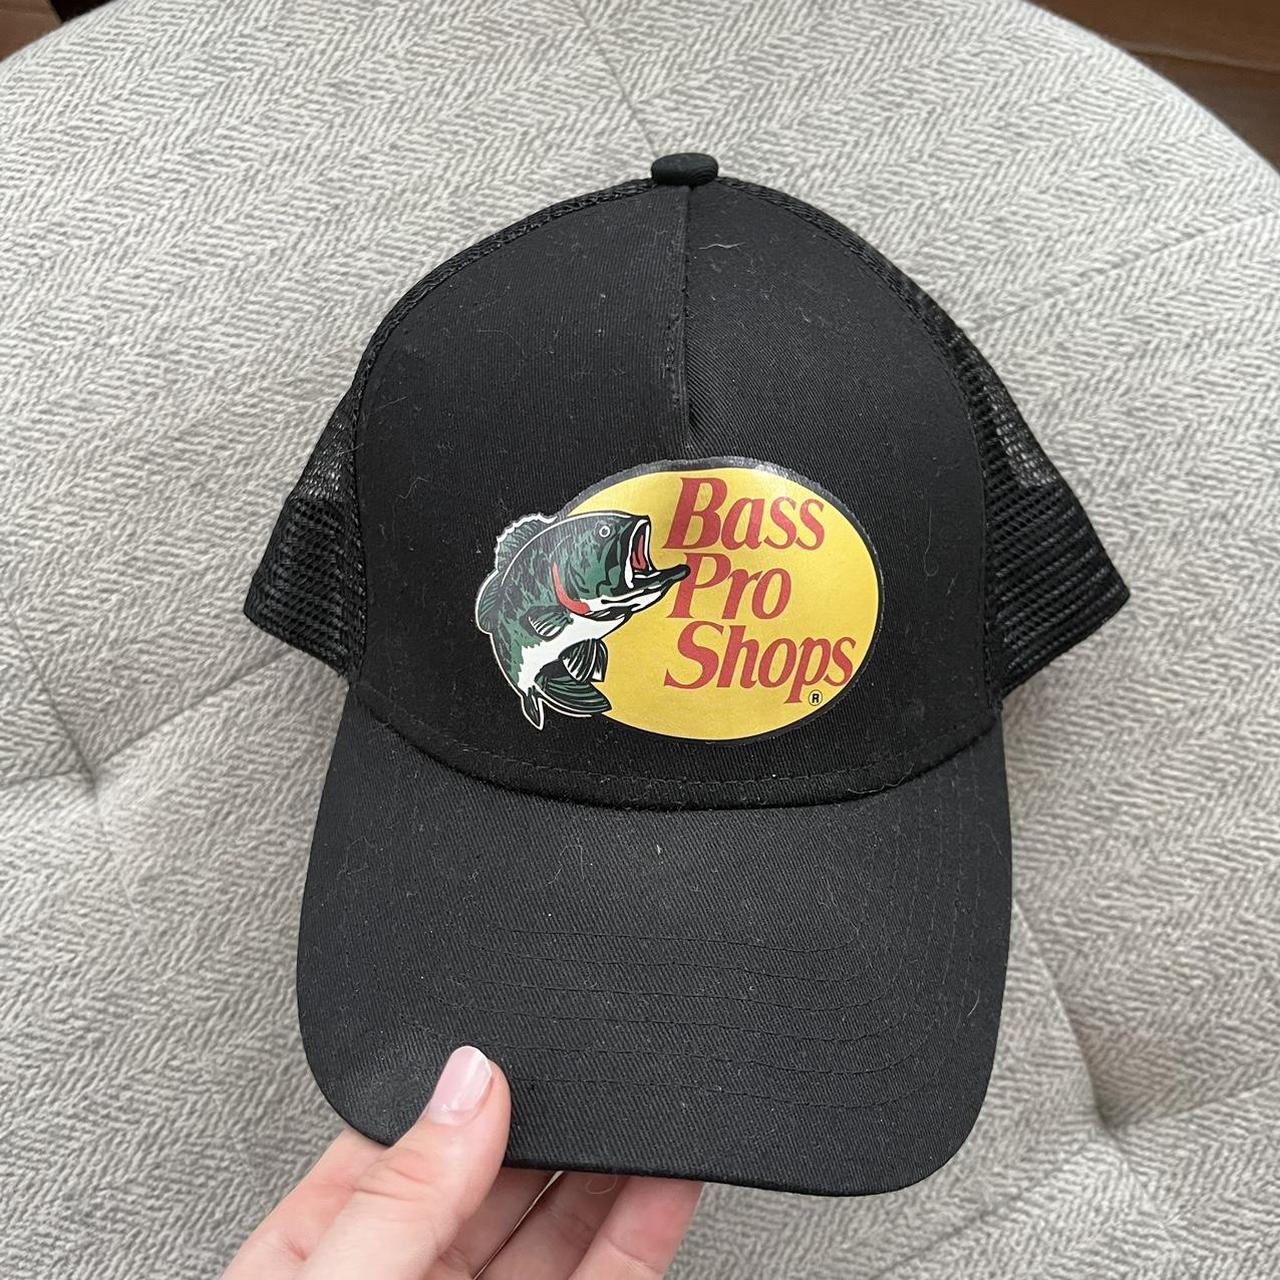 Bass Pro Shops Men's Hat - Black